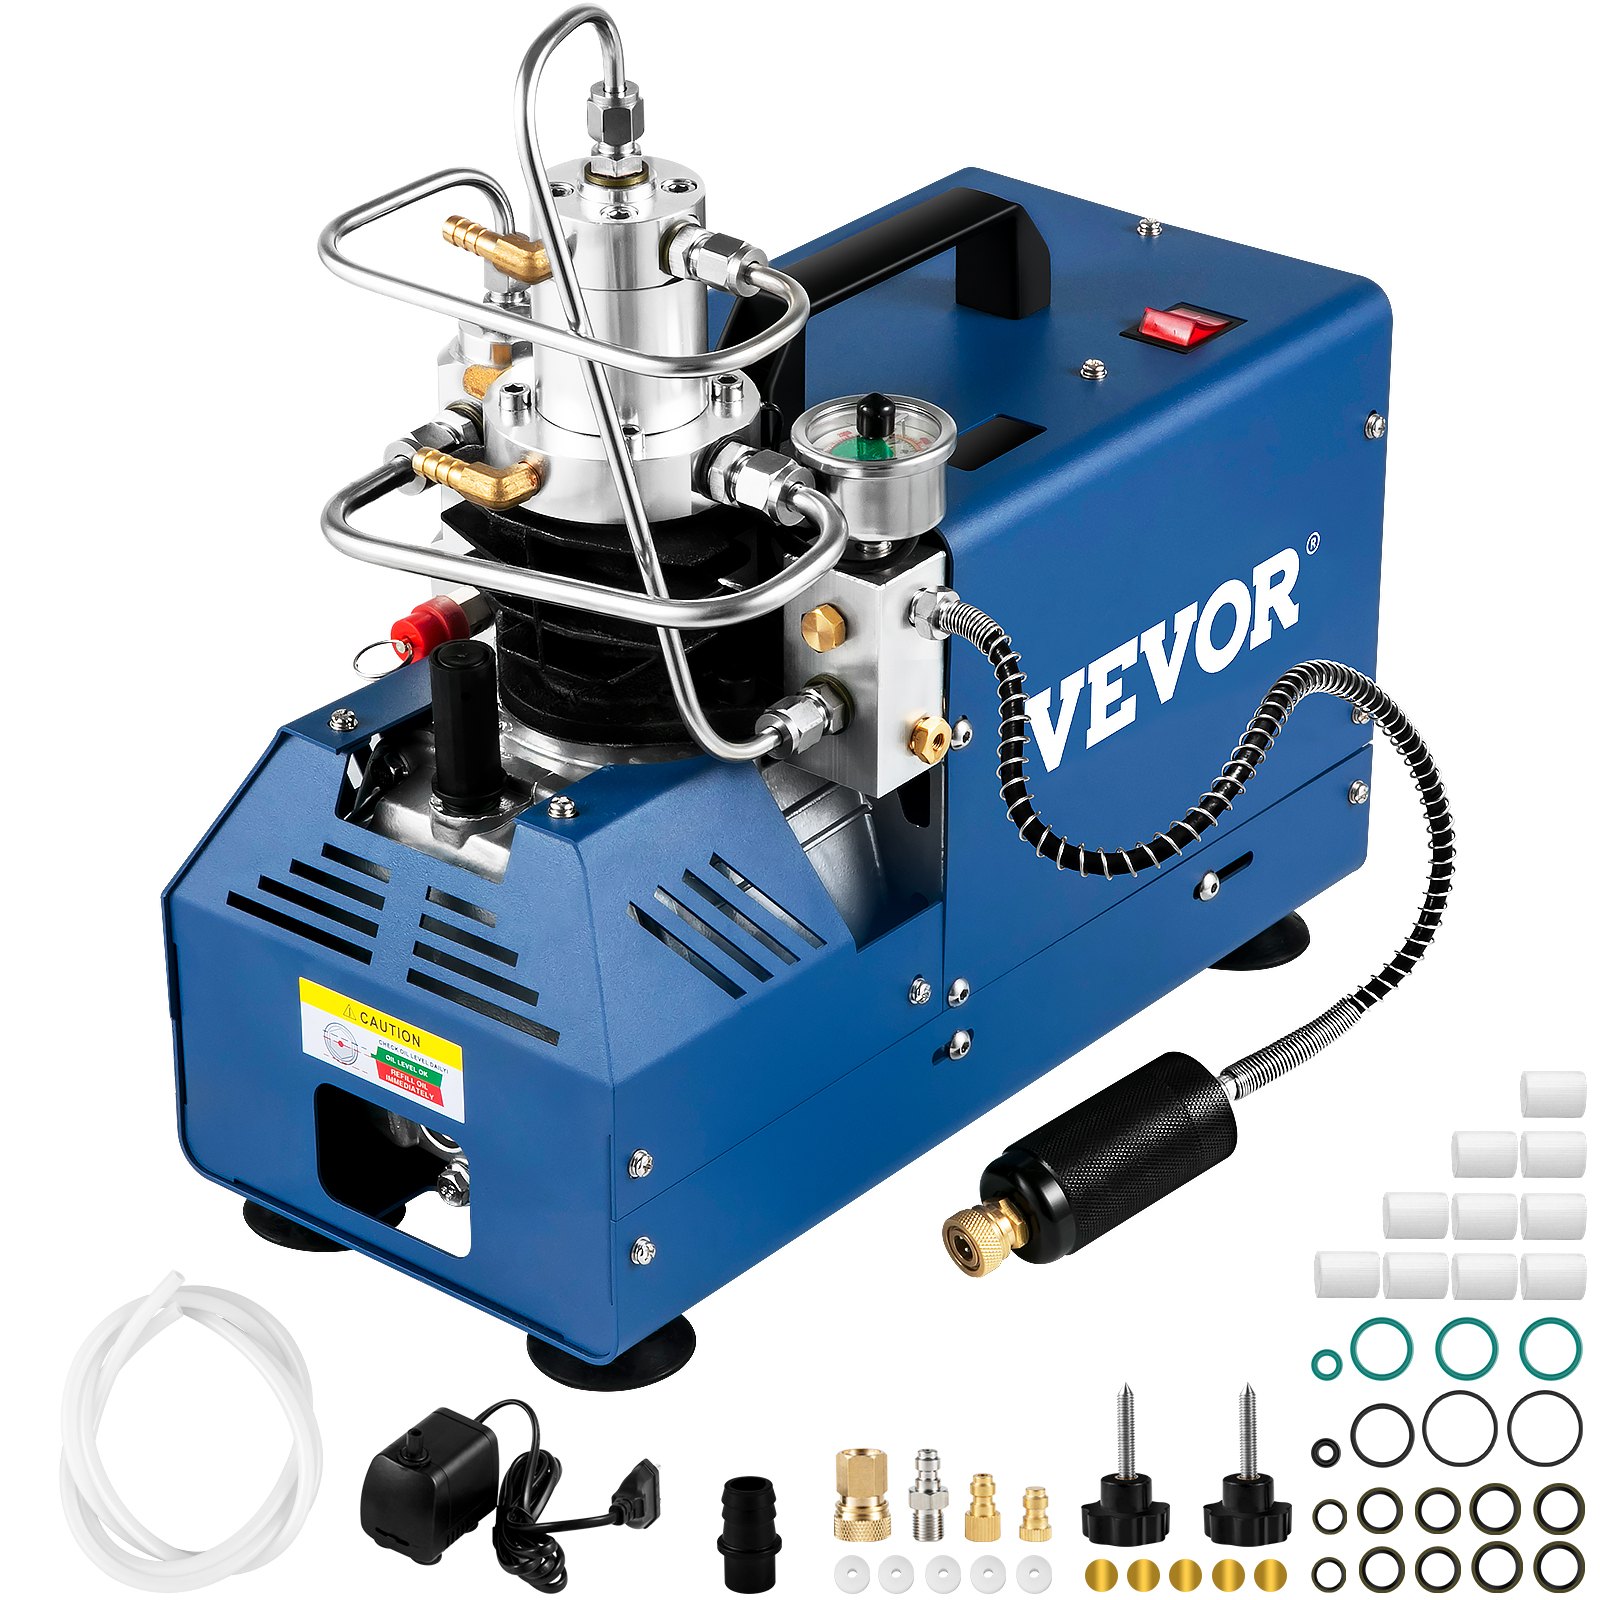 A VEVOR extra nagynyomású kompresszor akár 300 bar nyomást is elő tud állítani